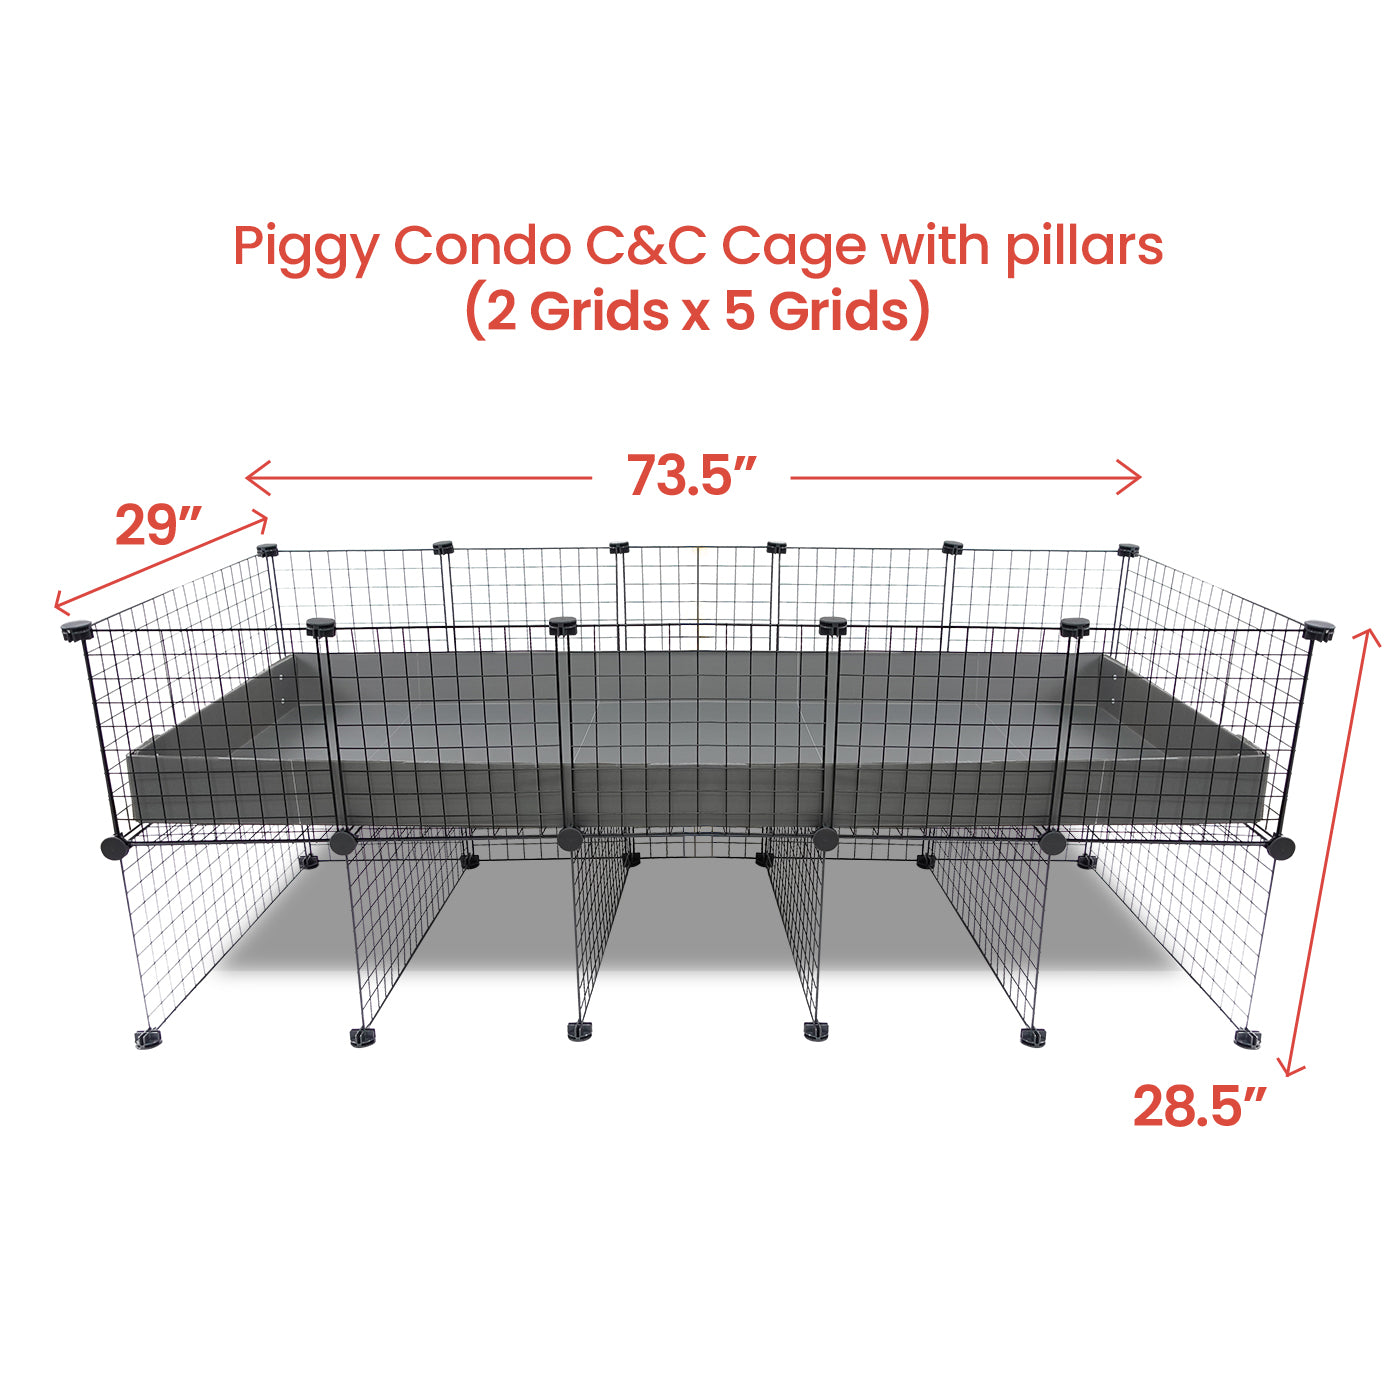 Piggy Condo C&C Cage with Pillars